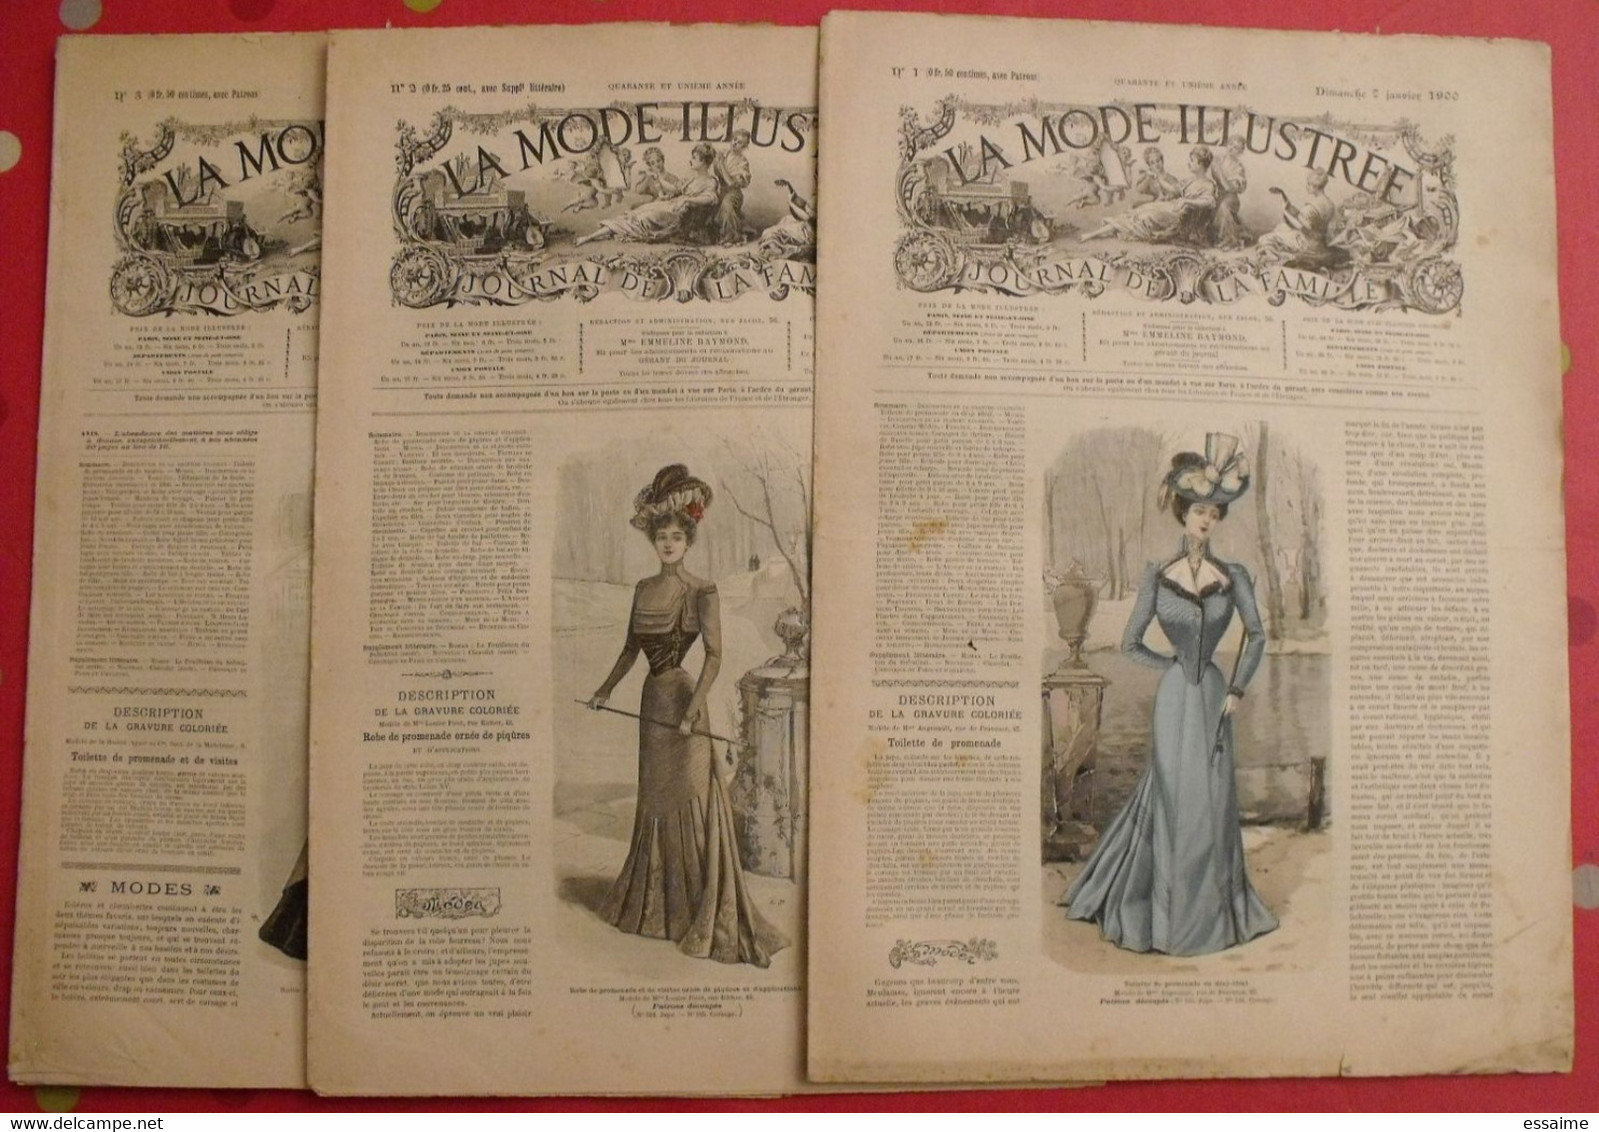 3 revues la mode illustrée, journal de la famille.  n° 1,2,3 de 1900. couverture en couleur. jolies gravures